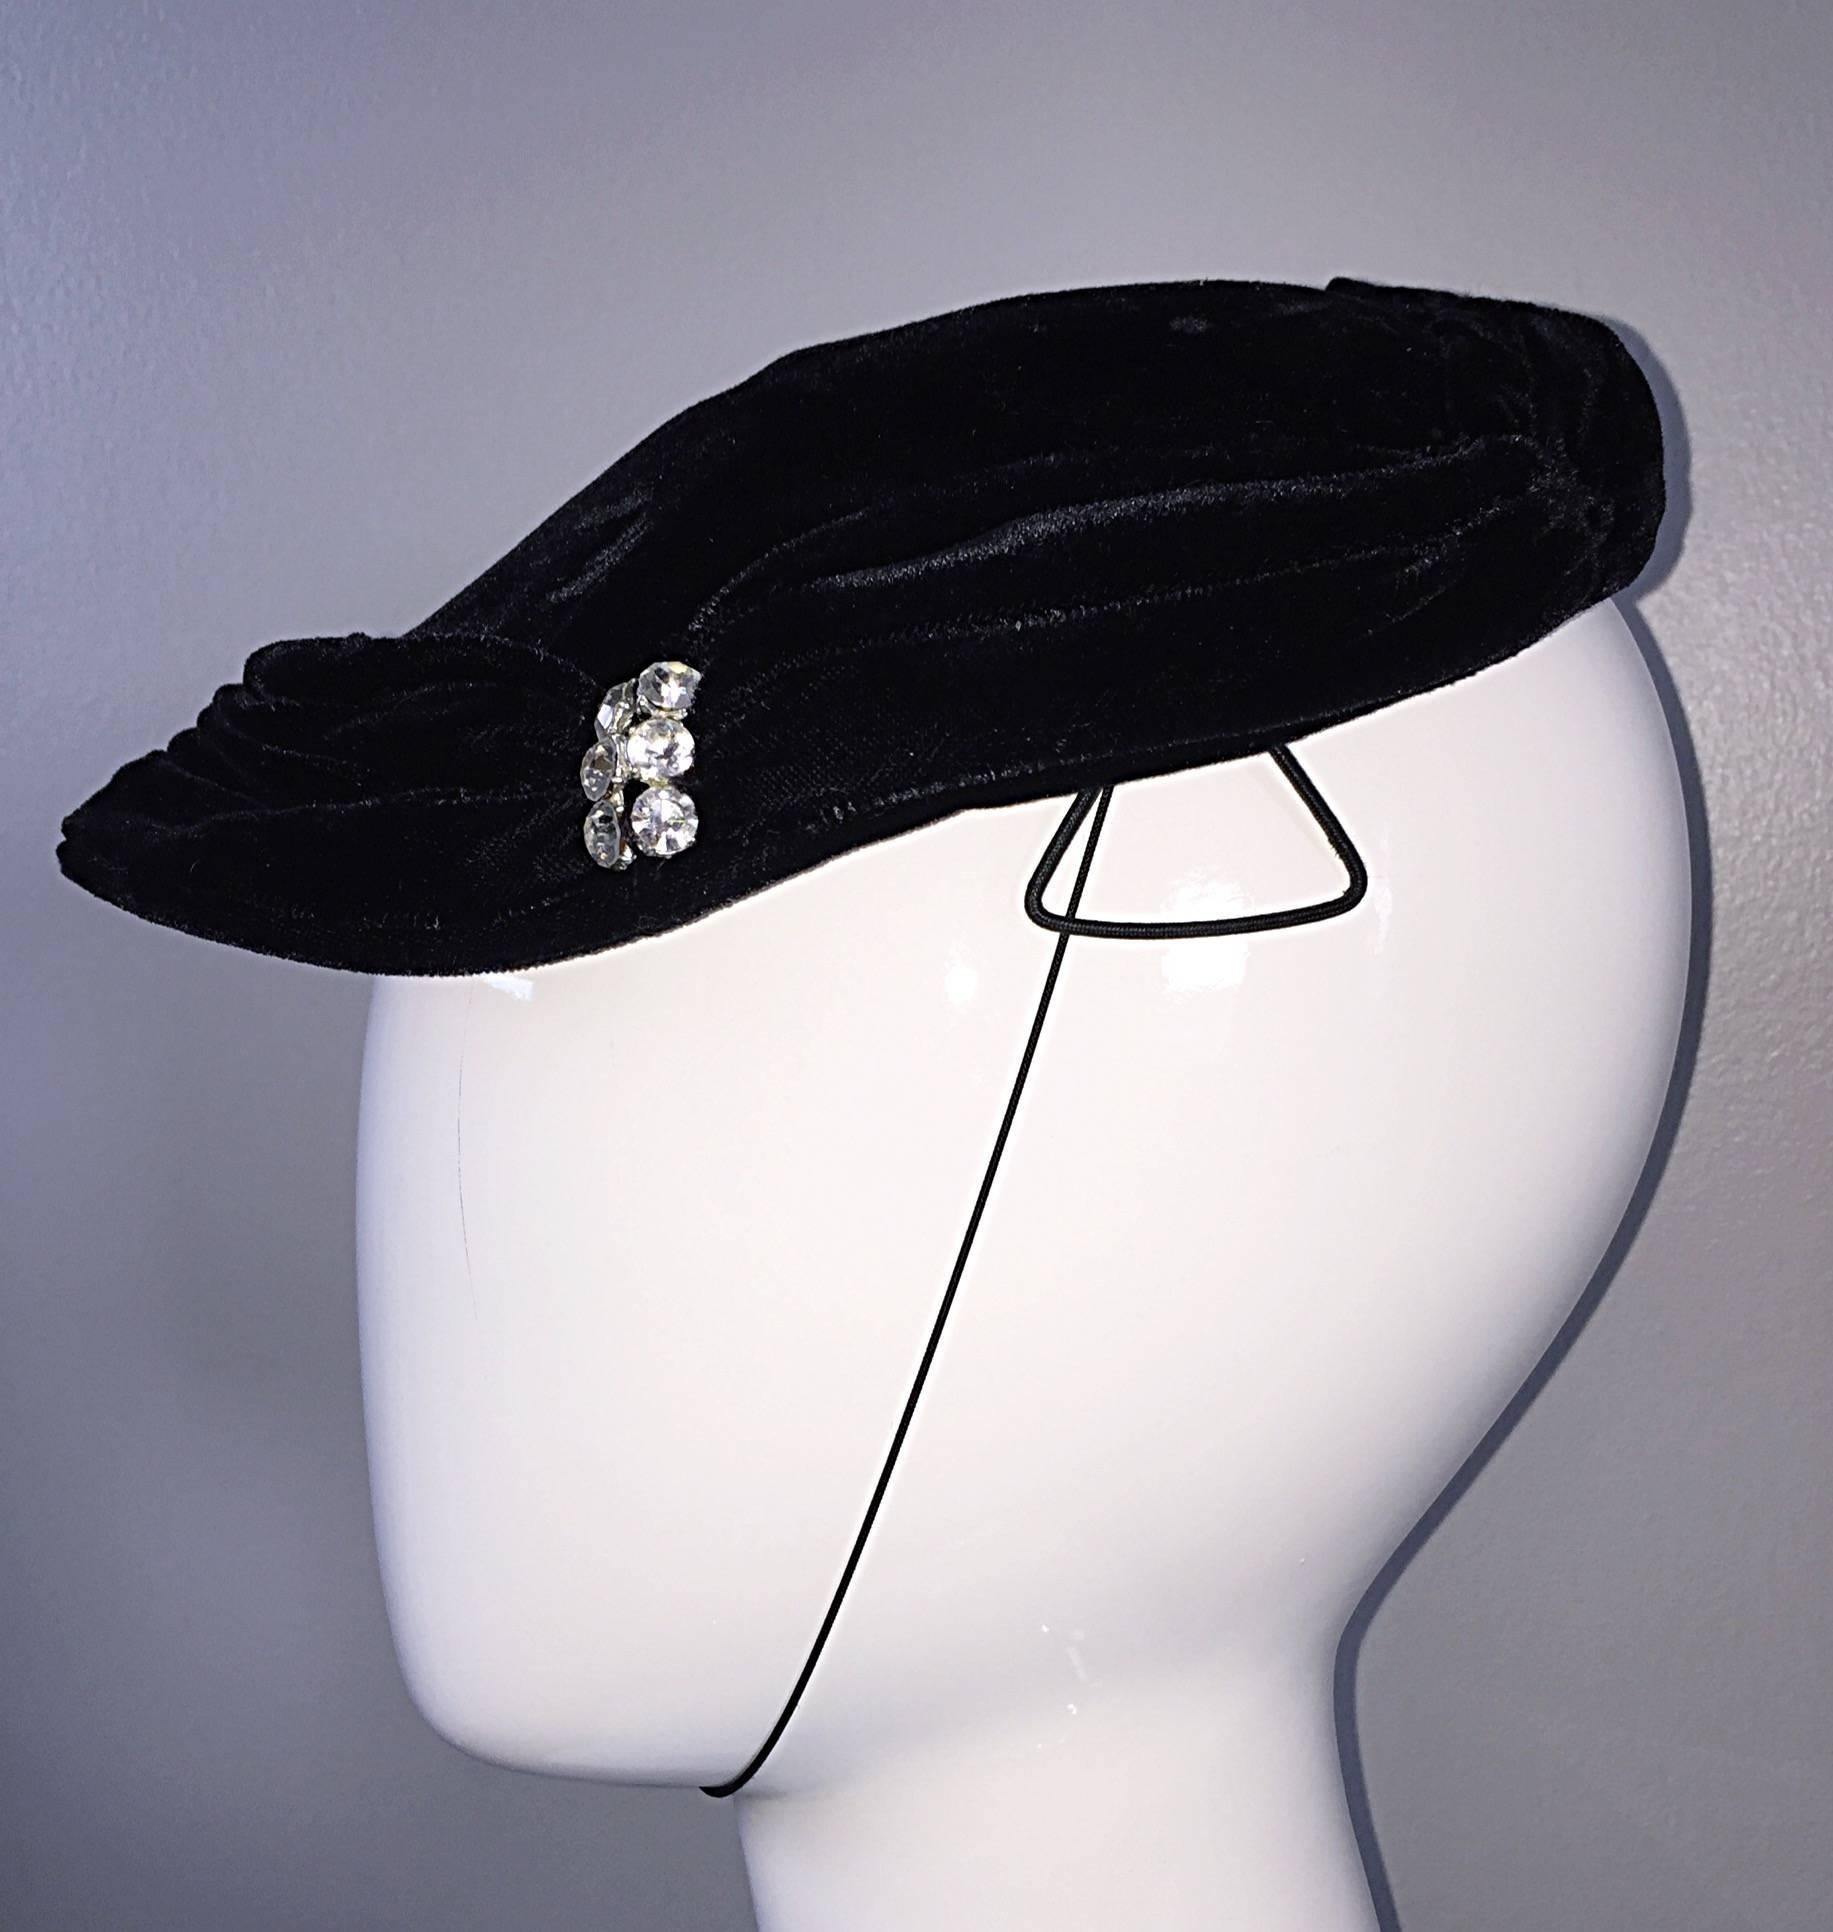 Magnifique chapeau vintage des années 40 en velours de soie noir ! Il est orné de strass sur chaque côté du devant, avec des plis complexes. La mentonnière et les pinces latérales garantissent que le chapeau reste sur la tête. En très bon état.